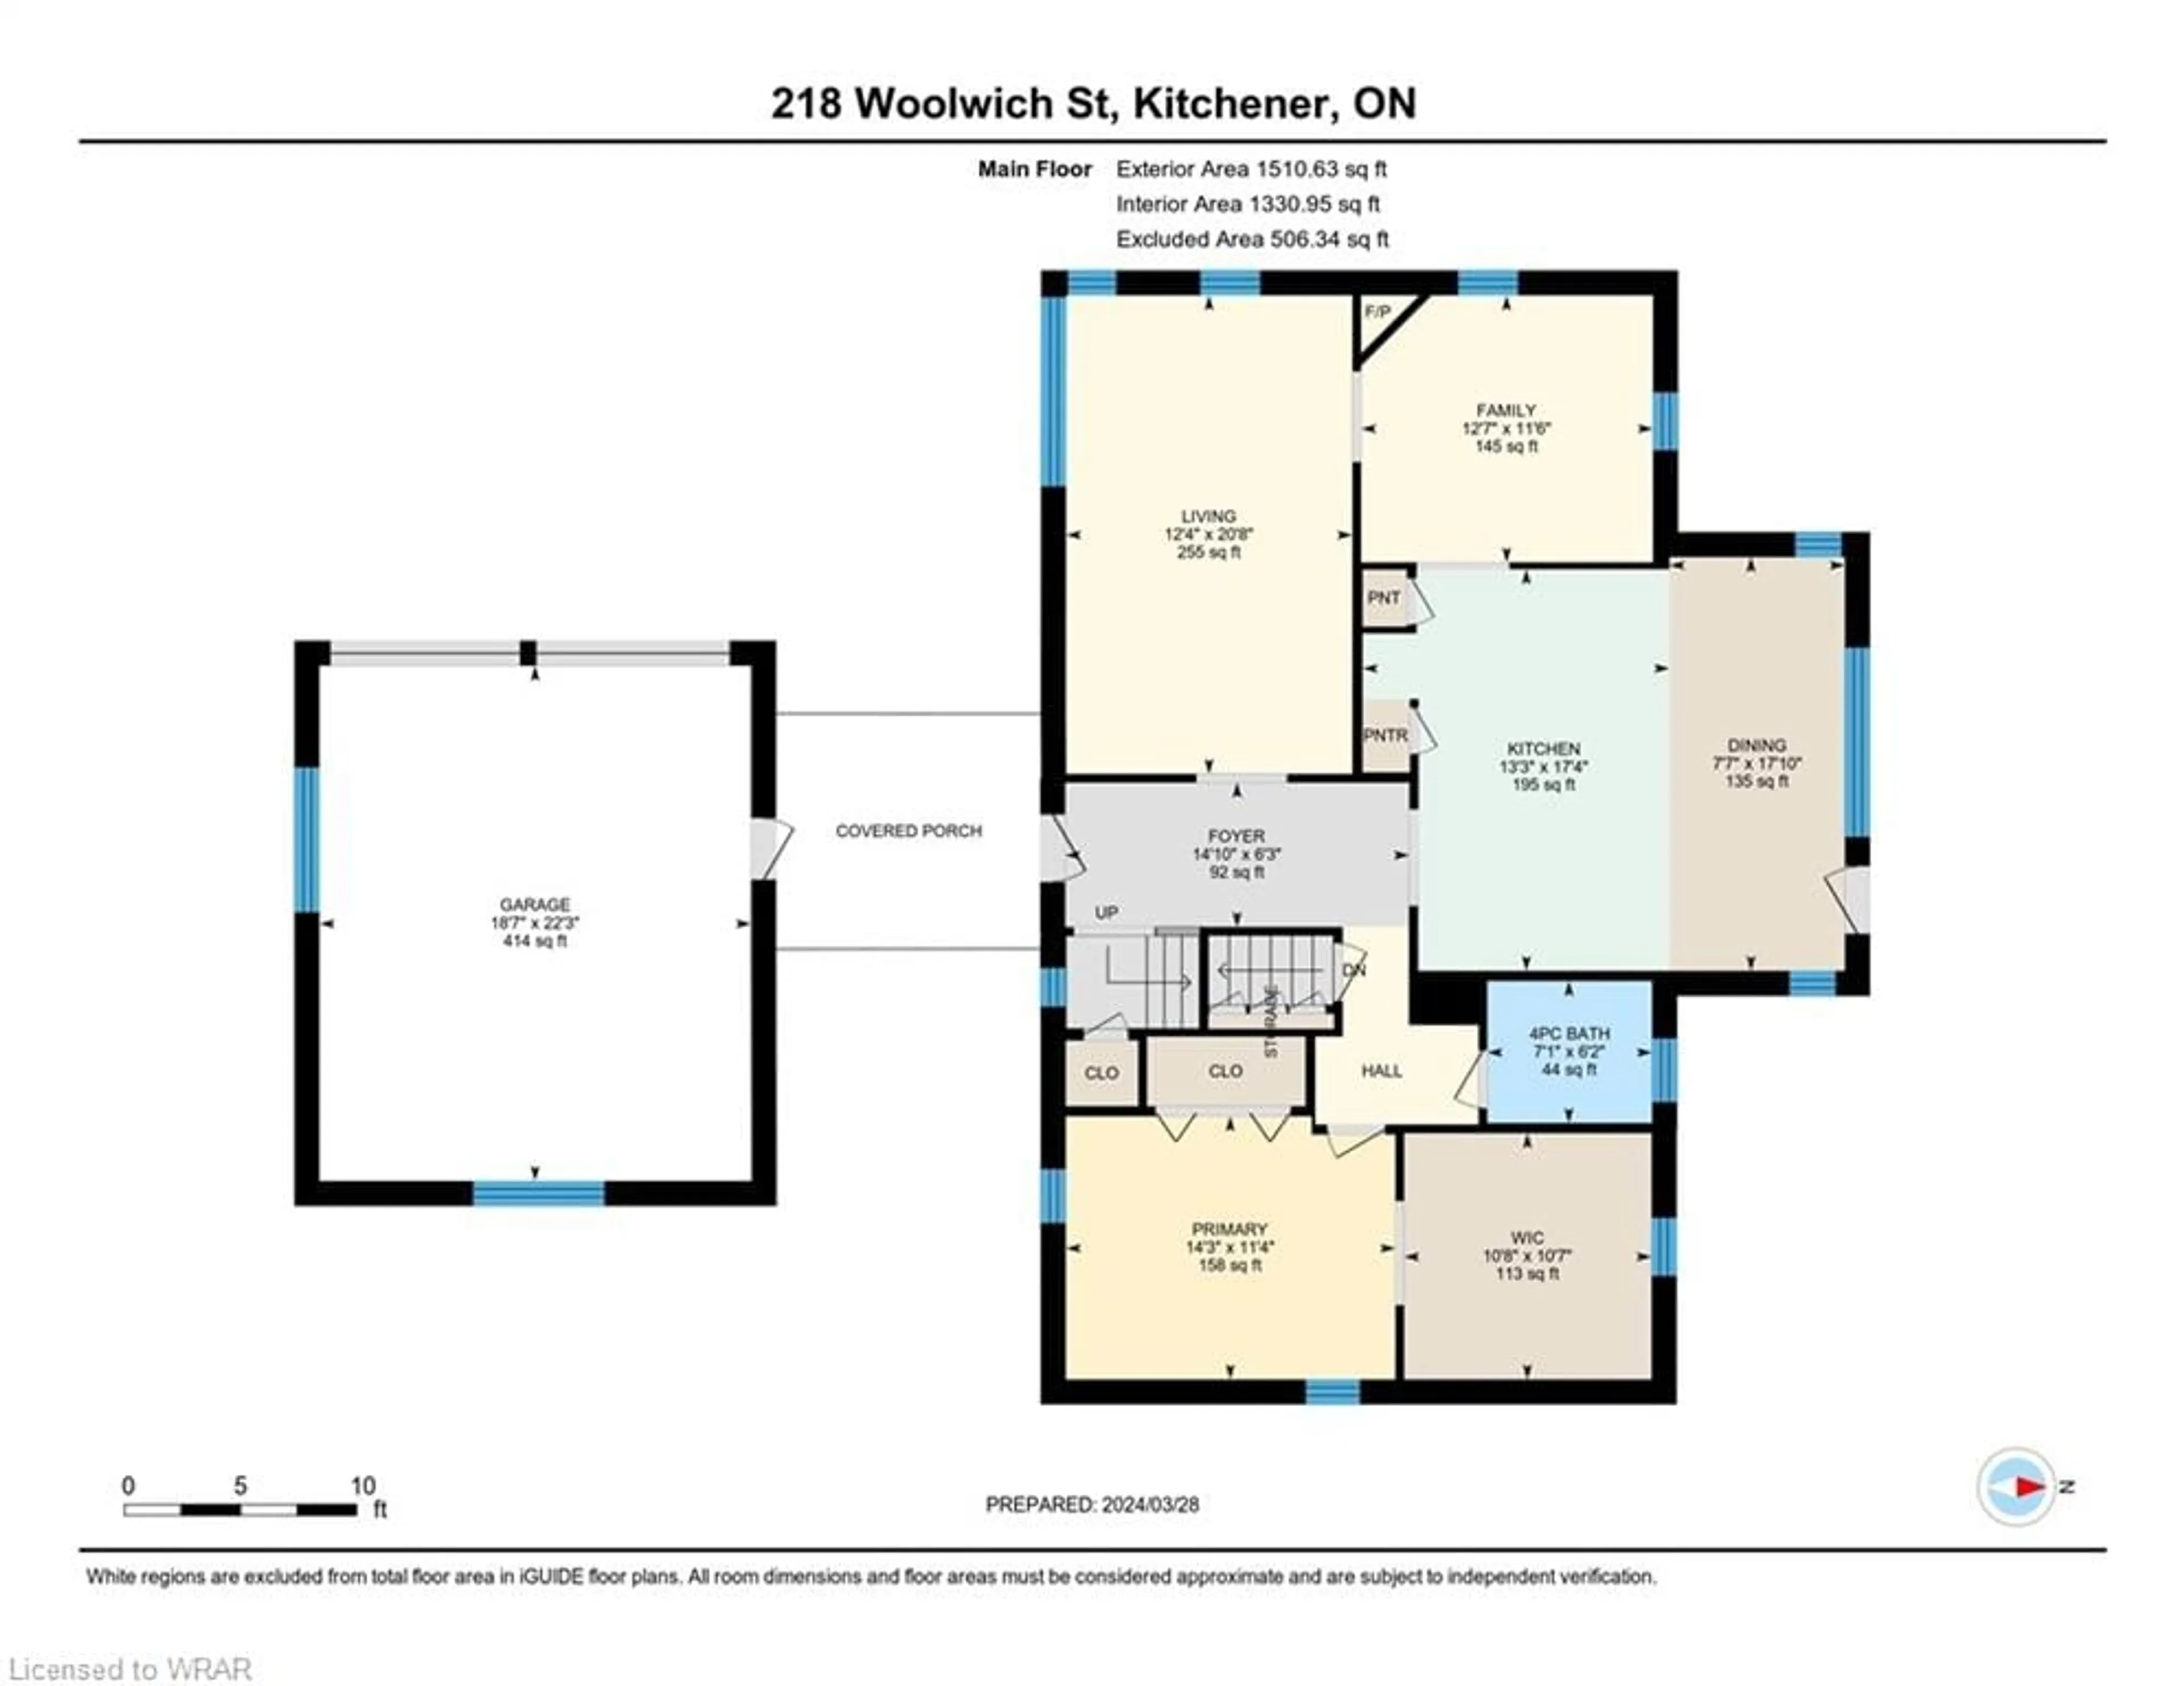 Floor plan for 218 Woolwich St, Kitchener Ontario N2K 1S7